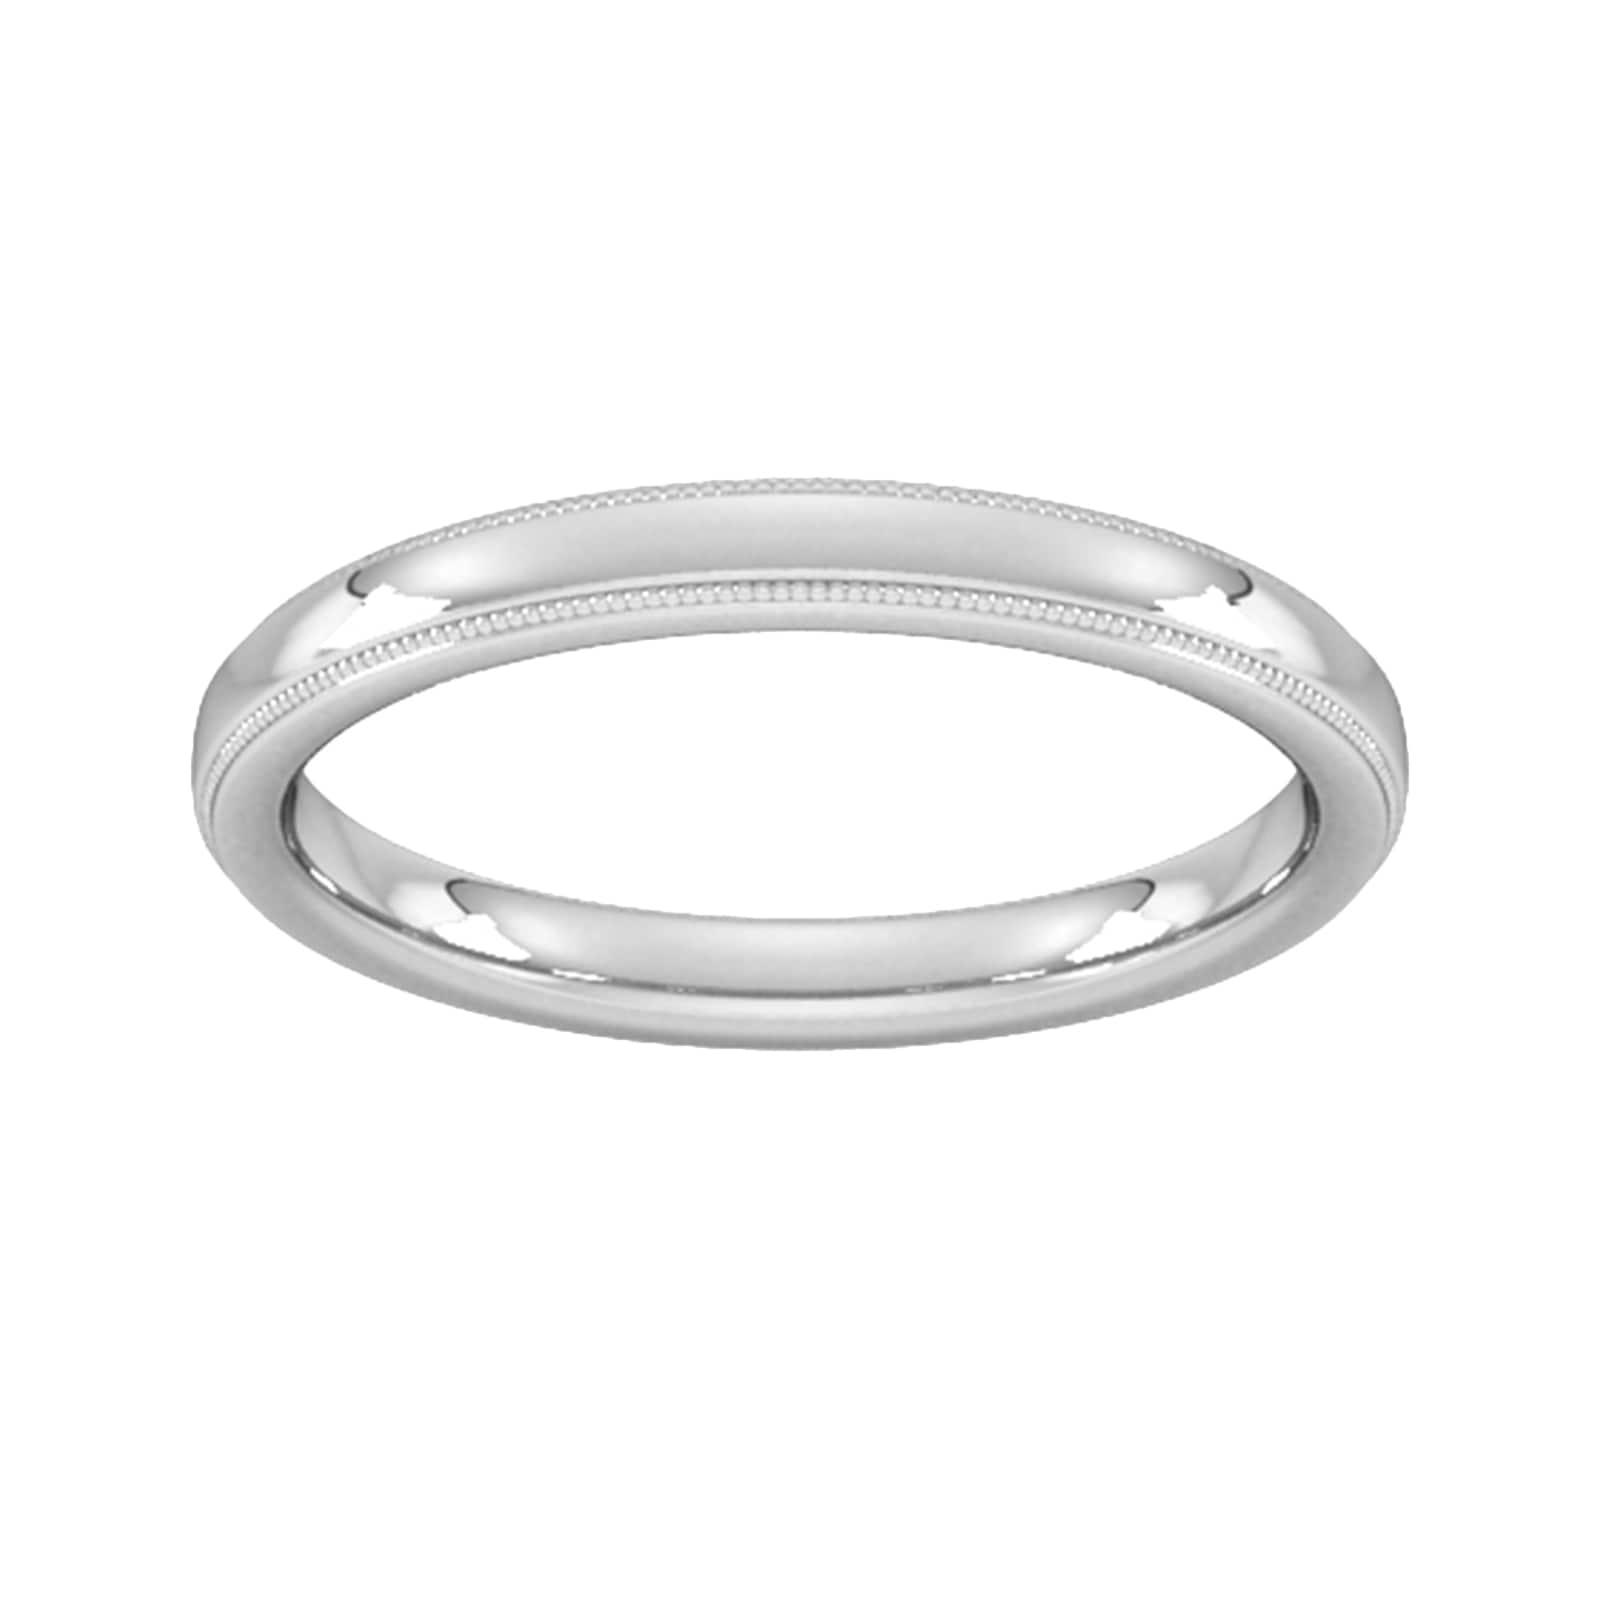 2.5mm D Shape Heavy Milgrain Edge Wedding Ring In 18 Carat White Gold - Ring Size S